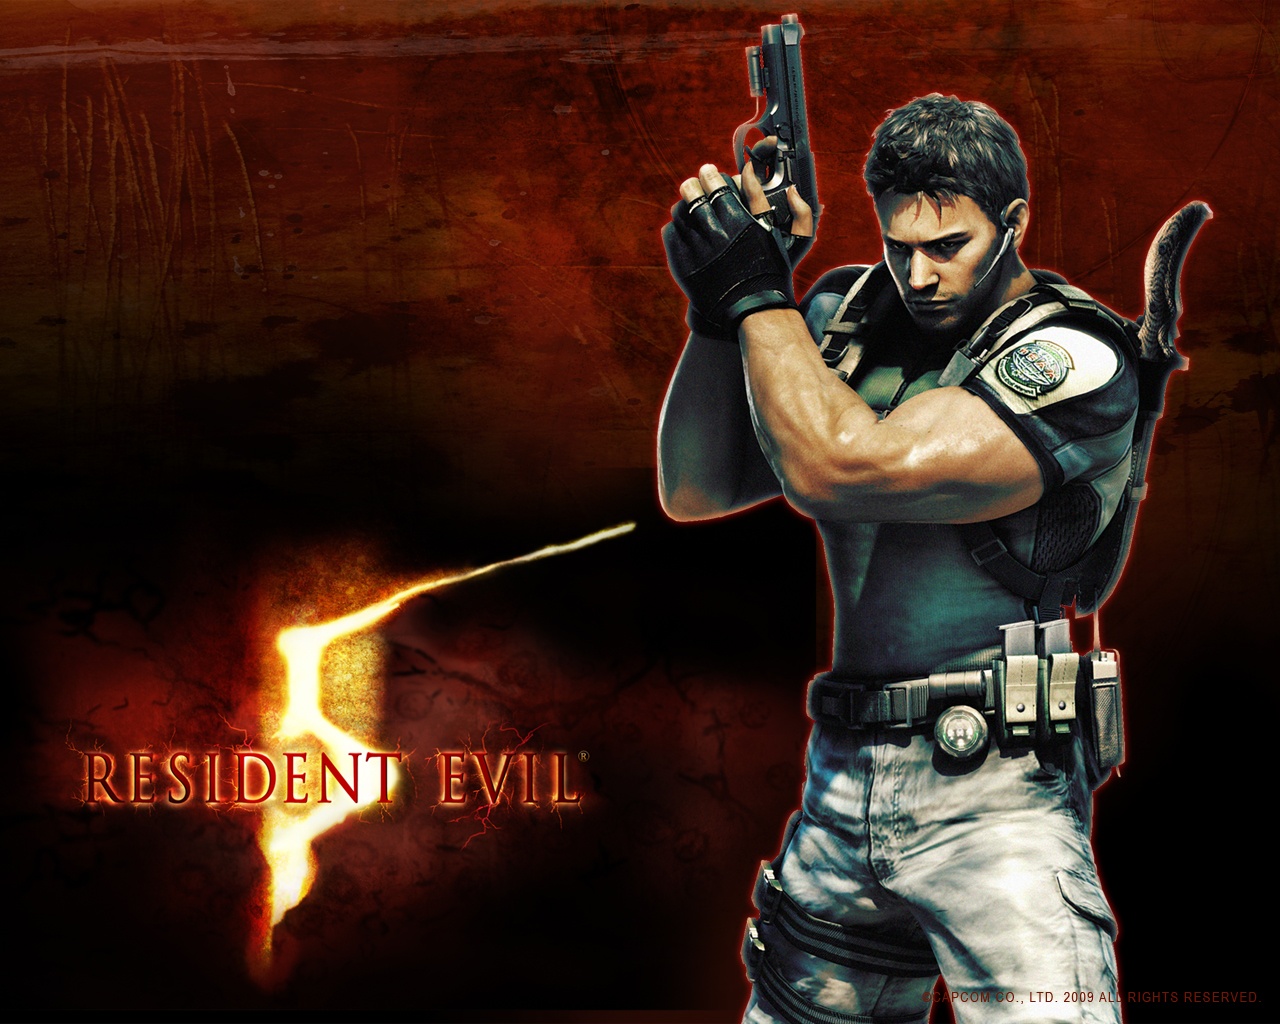 Resident Evil 5 (demo)